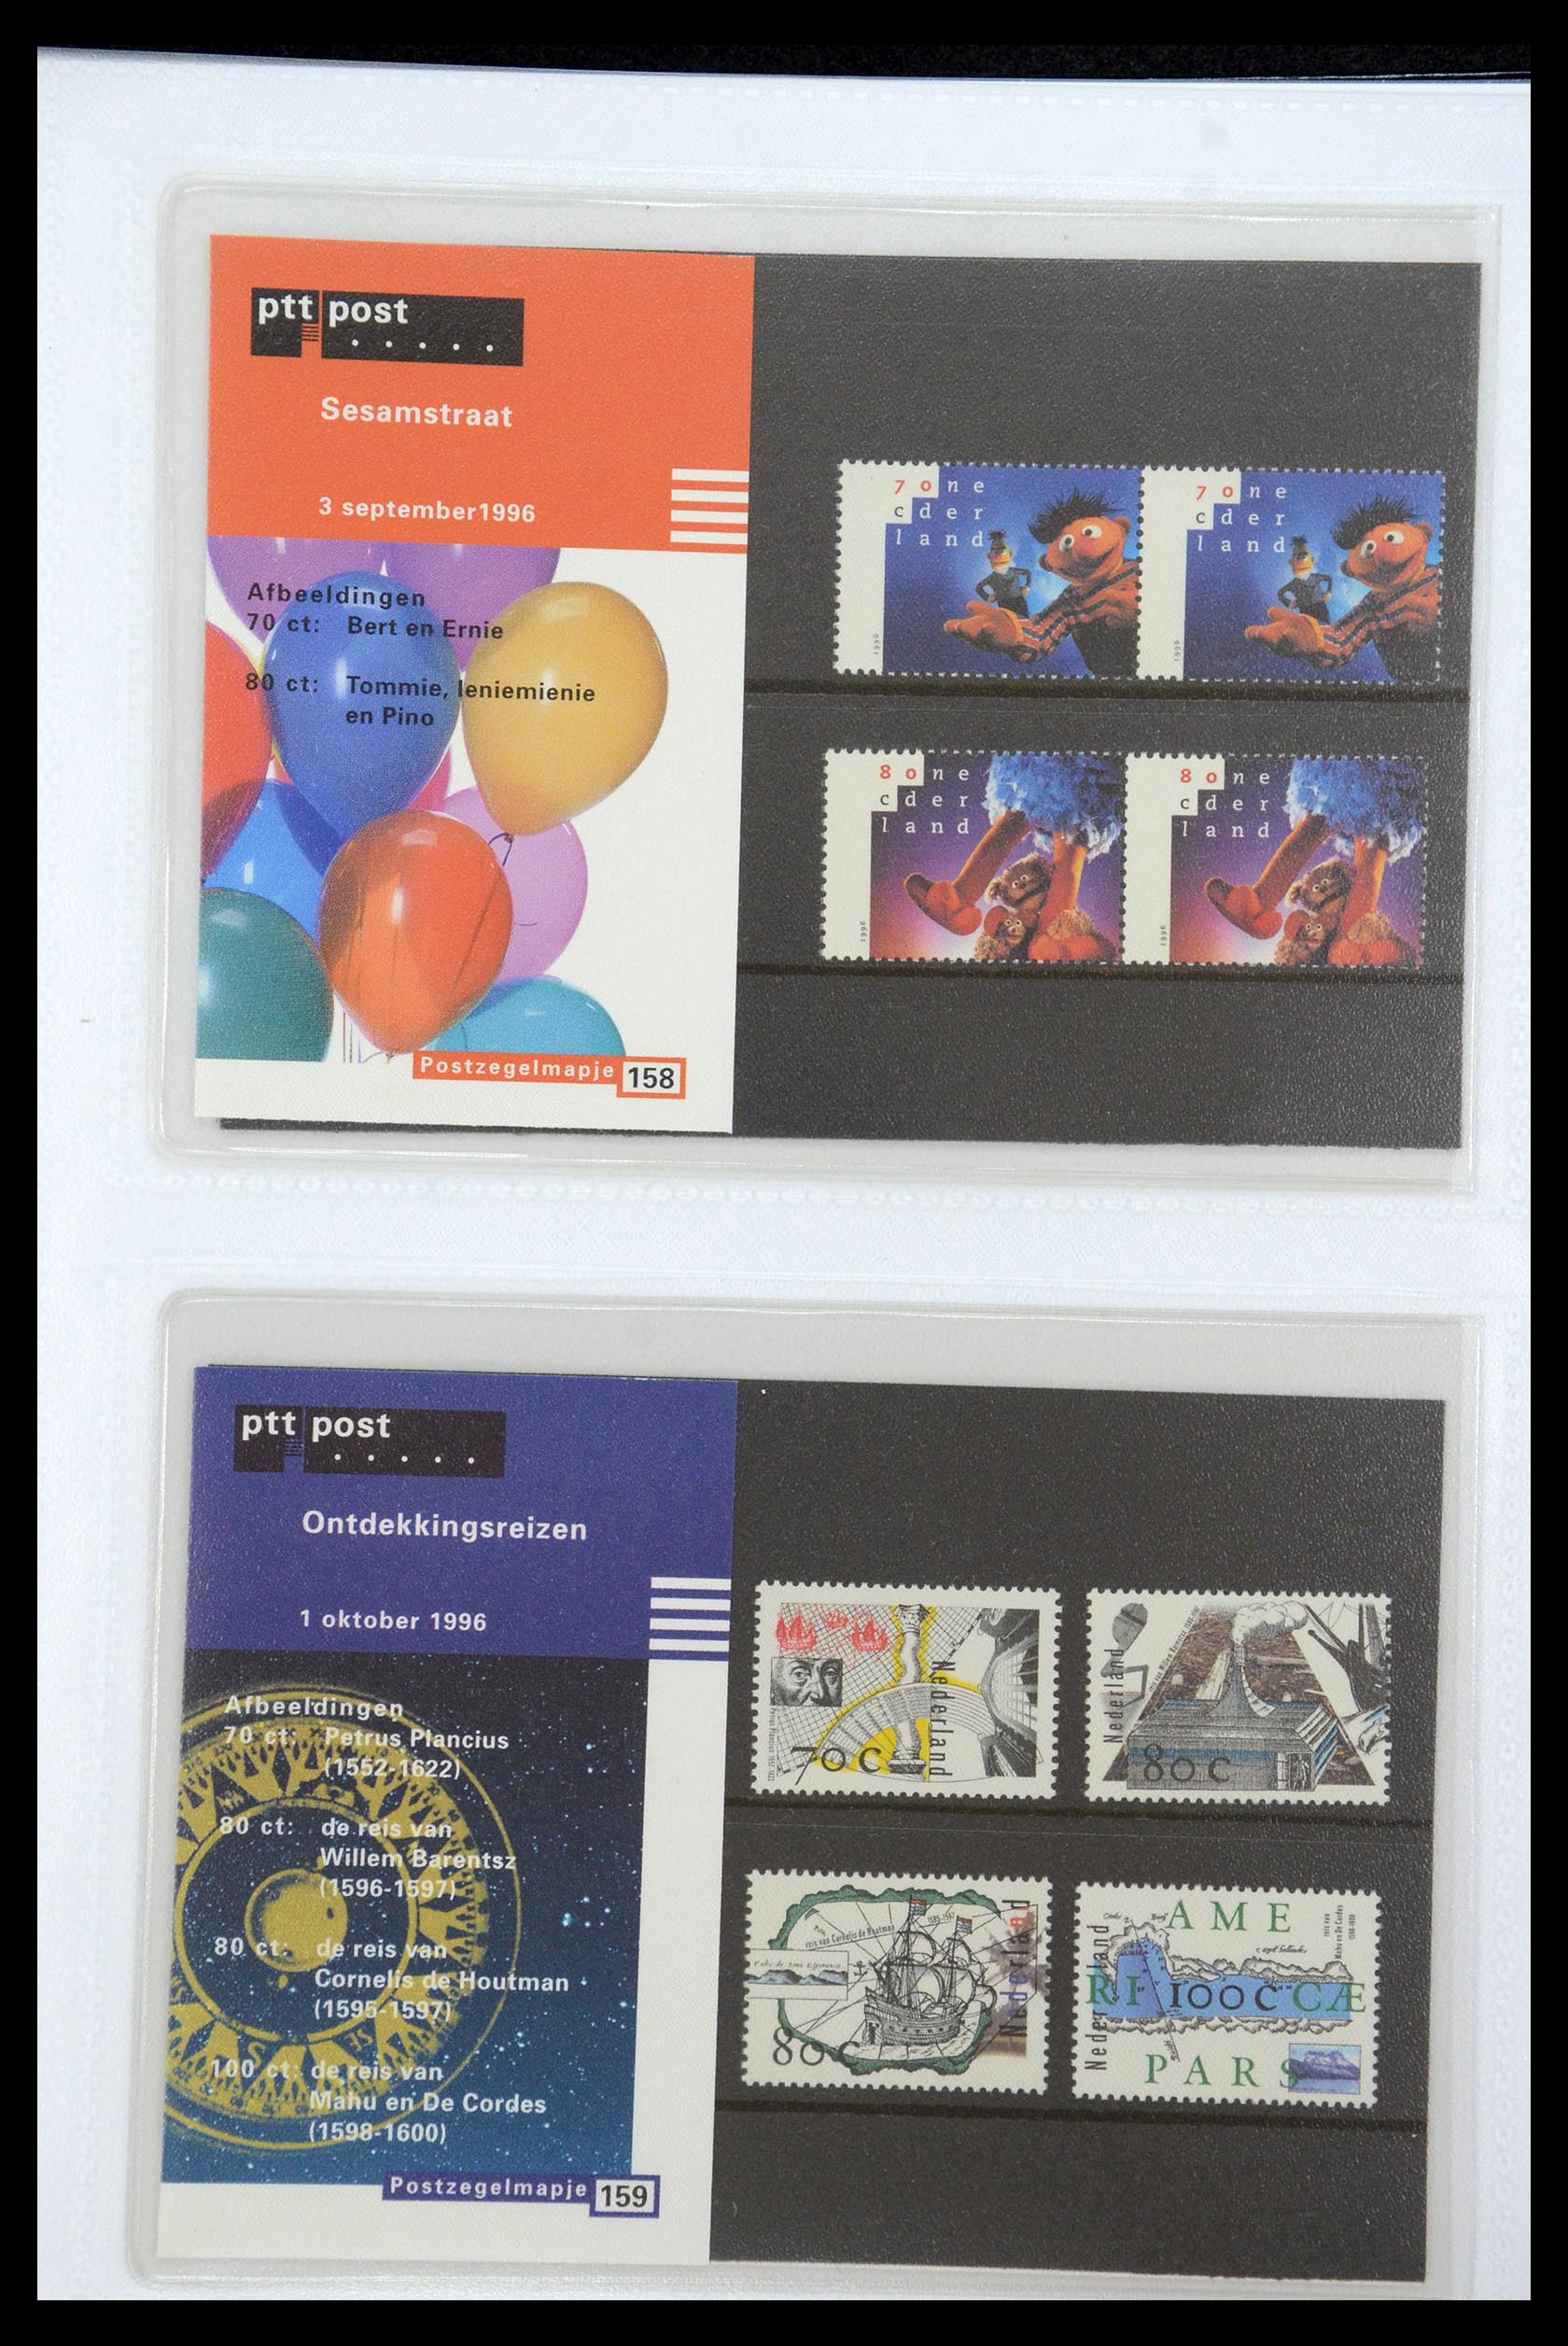 35947 082 - Stamp Collection 35947 Netherlands PTT presentation packs 1982-2019!